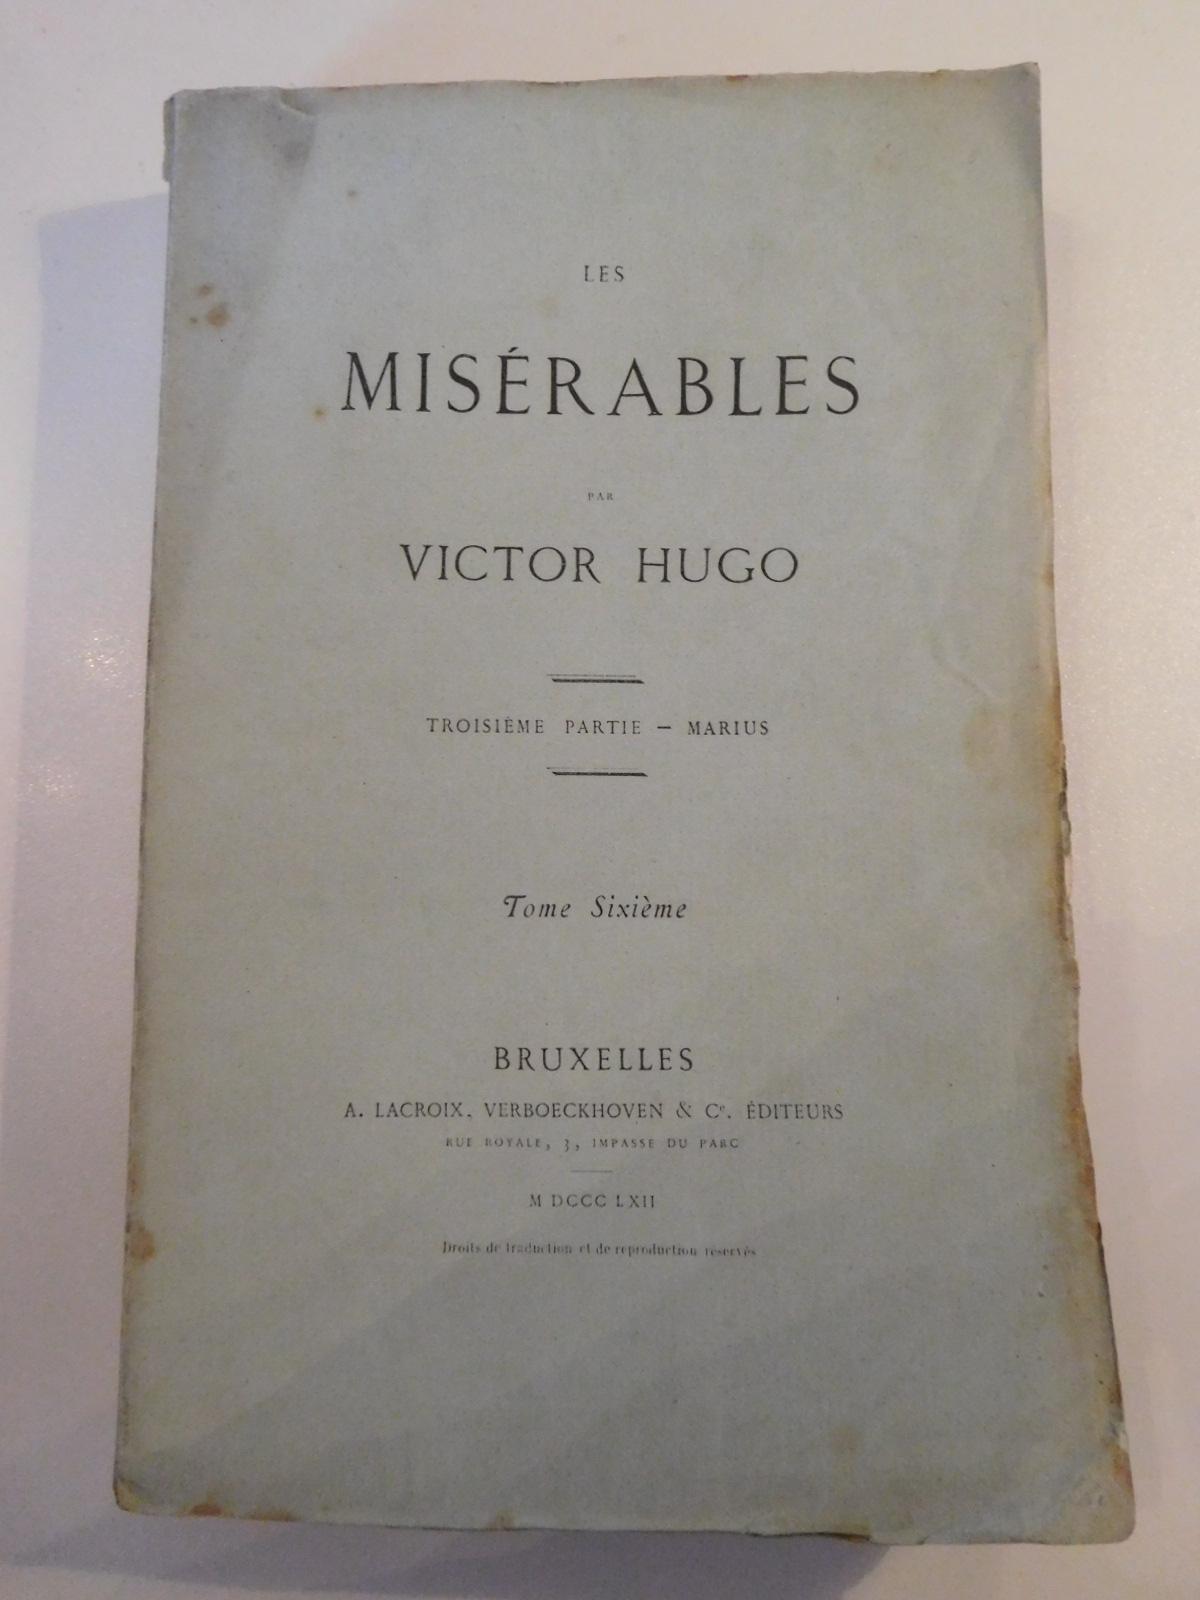 Les Misérables. Troisième partie - Marius - Tome sixième (French language, 1862)